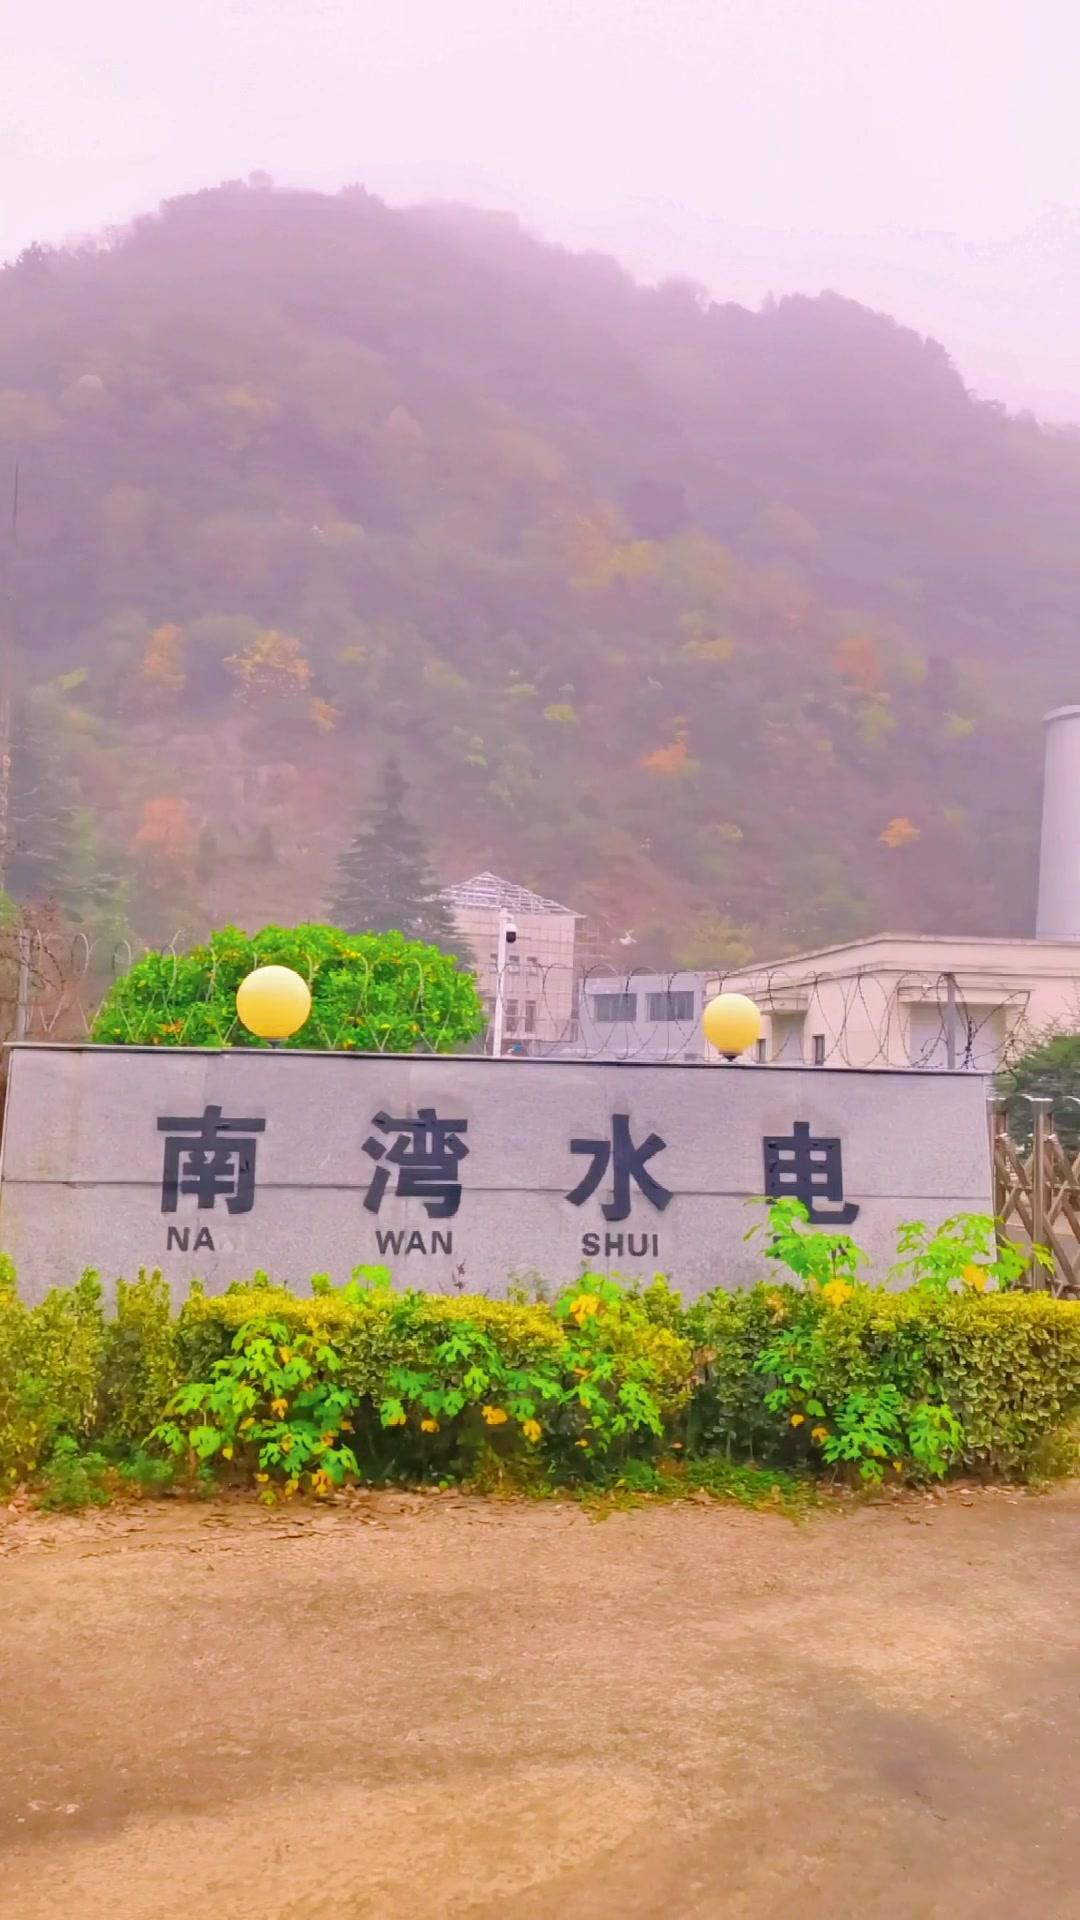 南湾水电站位于信阳南湾水库大坝东端坝脚处,是坝后式电站,始建于1958